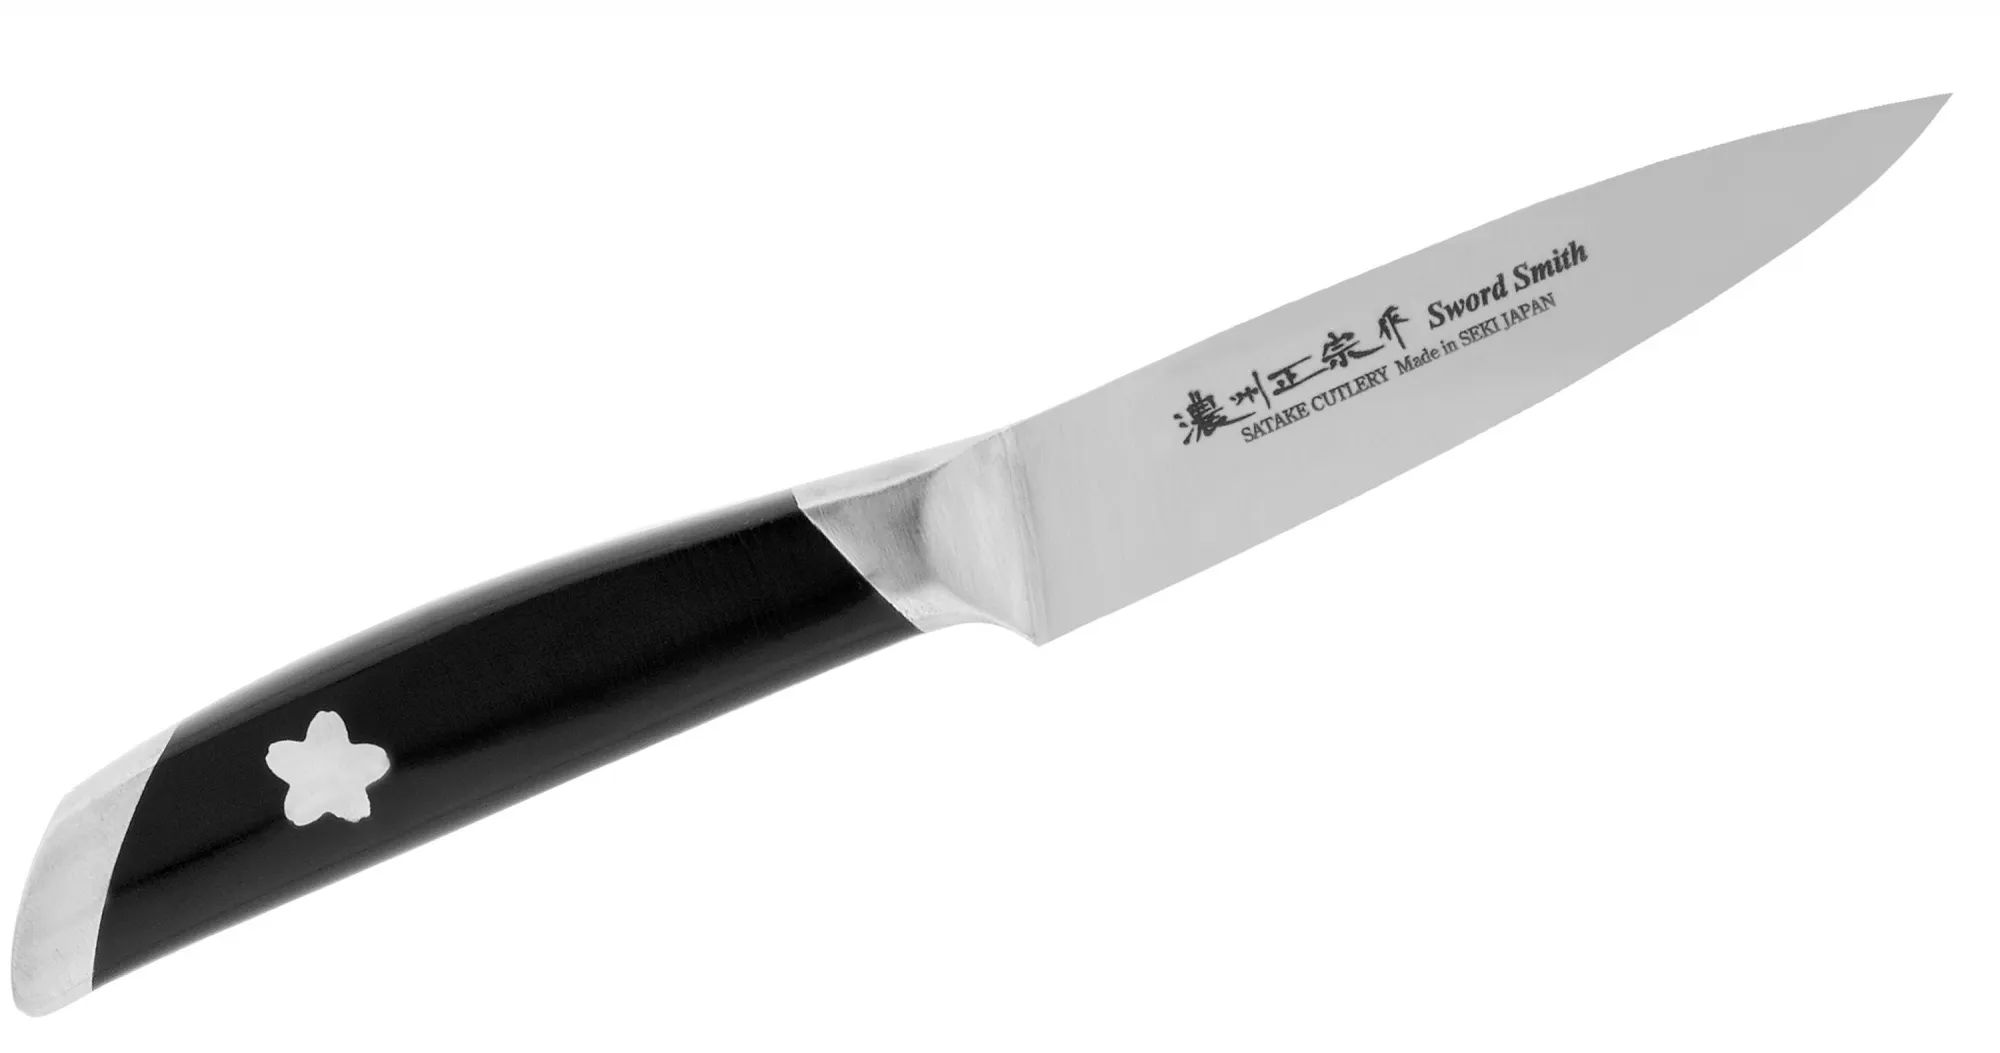 Нож кухонный шеф(Bunka)Satake stainlessbolster 210 мм,802-802. Нож кухонный Bunka (210мм) Satake Japan Traditional. Набор кухонных ножей Satake Sakura hg8082. Набор кухонных ножей Satake swordsmith hg8323.